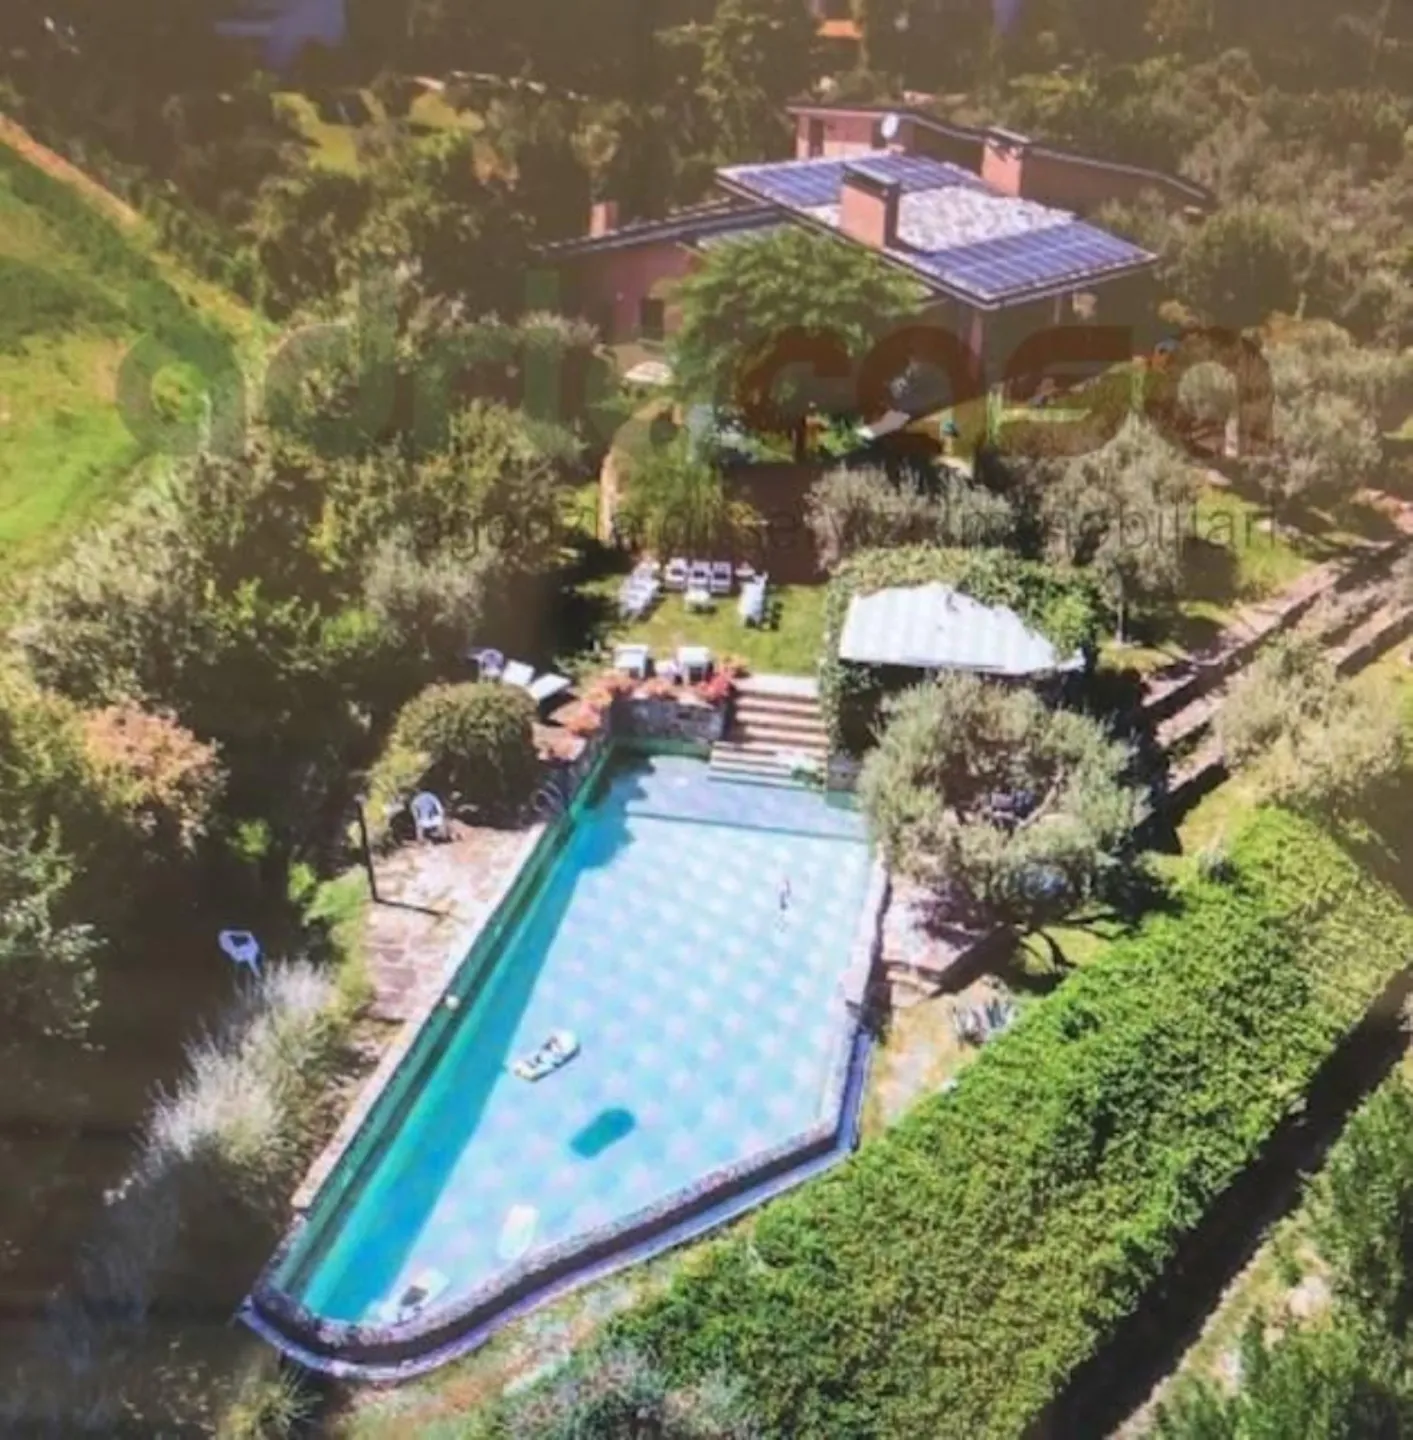 Immagine per Villa in vendita a Misano Adriatico